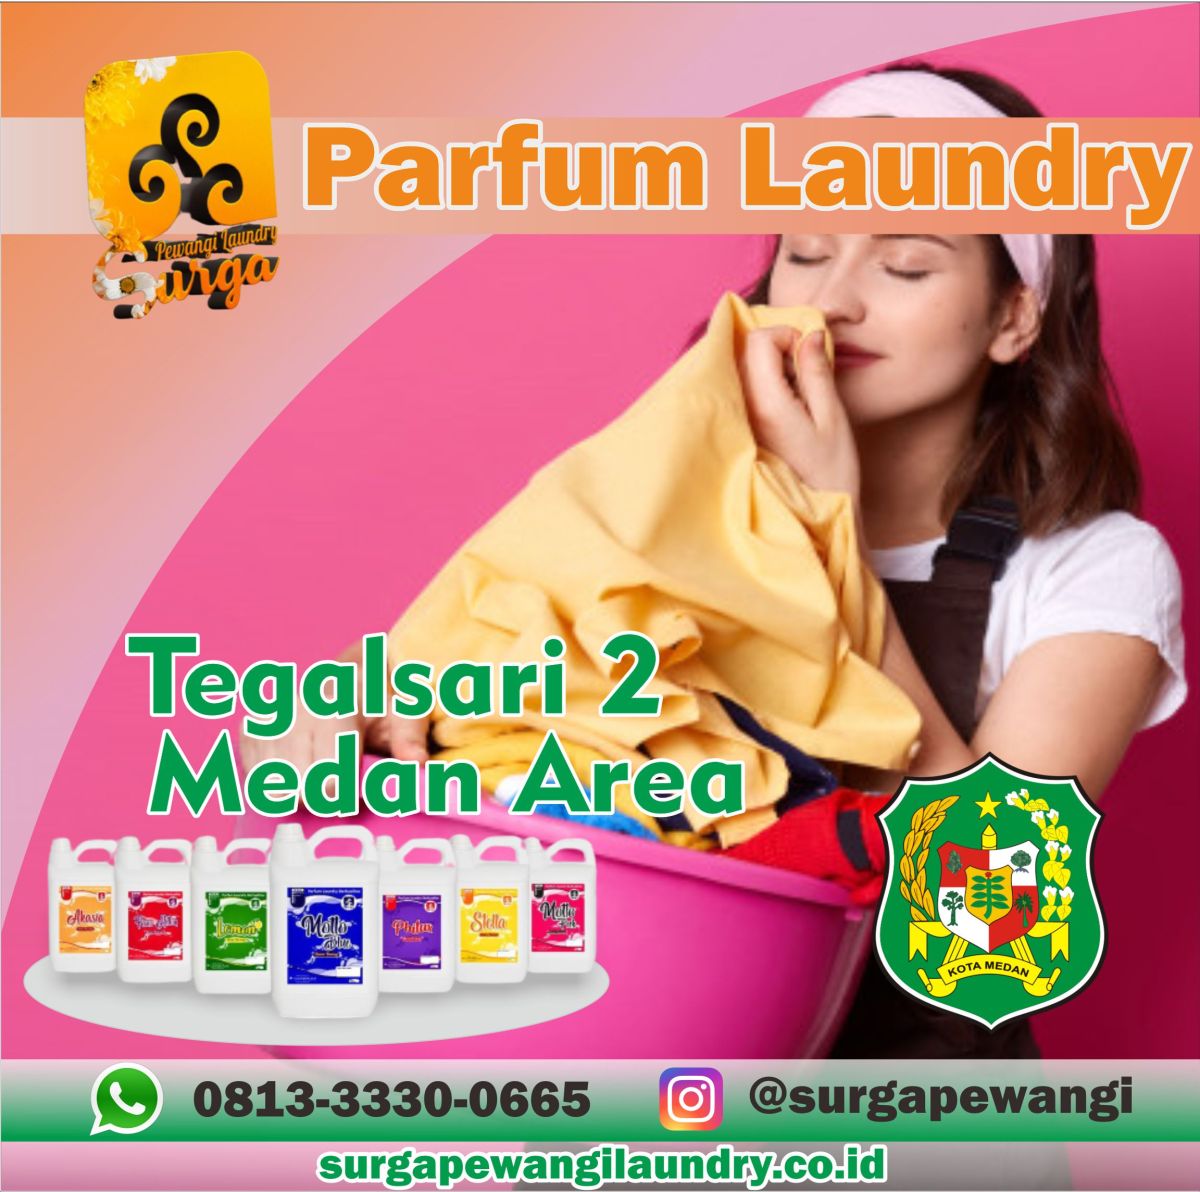 Parfum Laundry Tegalsari 2, Medan Area